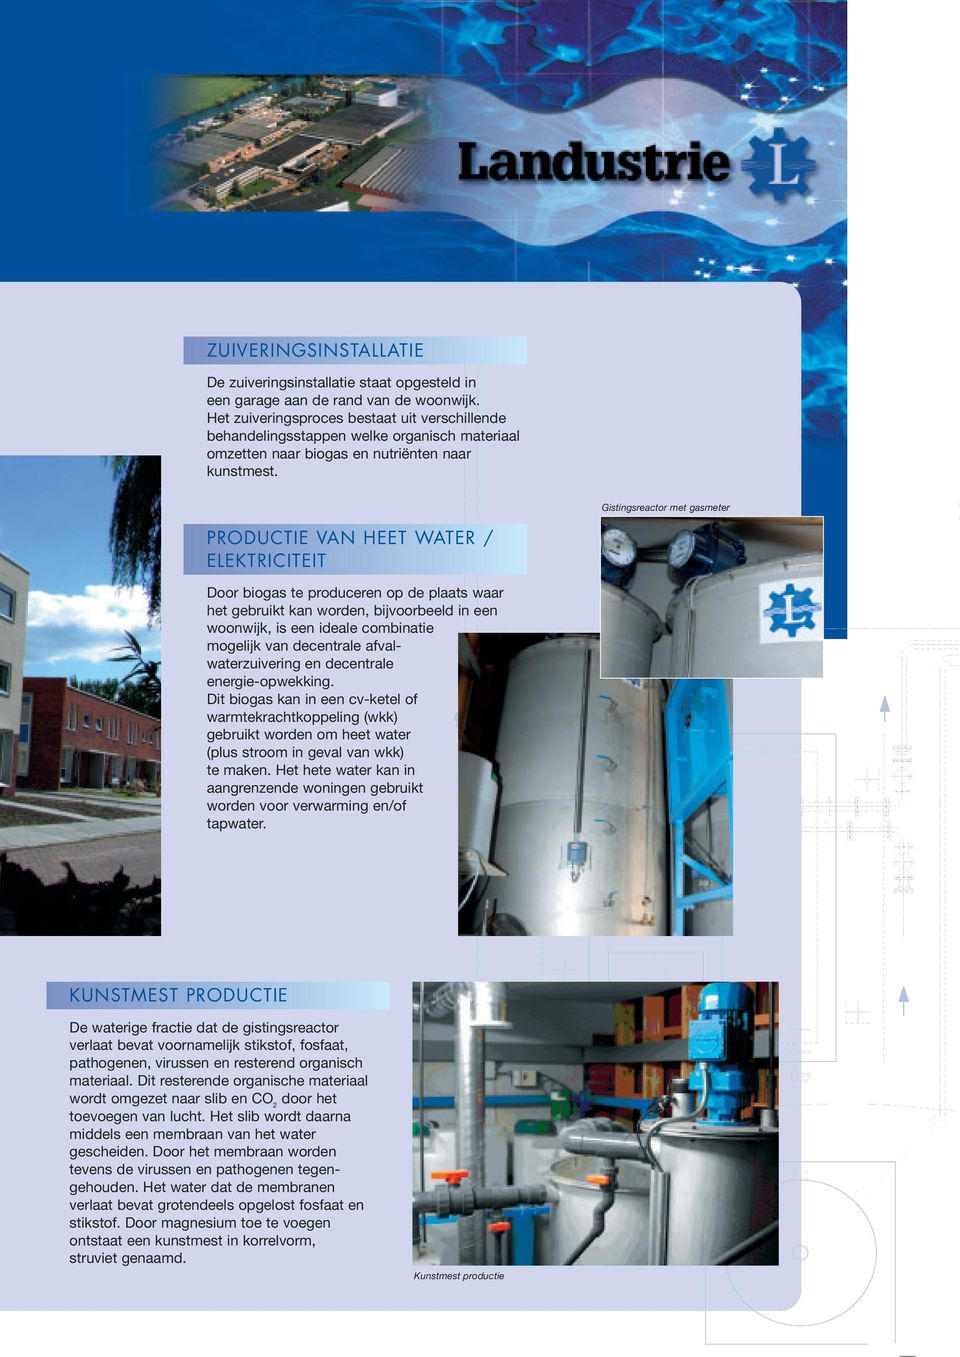 Gistingsreactor met gasmeter PRODUCTIE VAN HEET WATER / ELEKTRICITEIT Door biogas te produceren op de plaats waar het gebruikt kan worden, bijvoorbeeld in een woonwijk, is een ideale combinatie